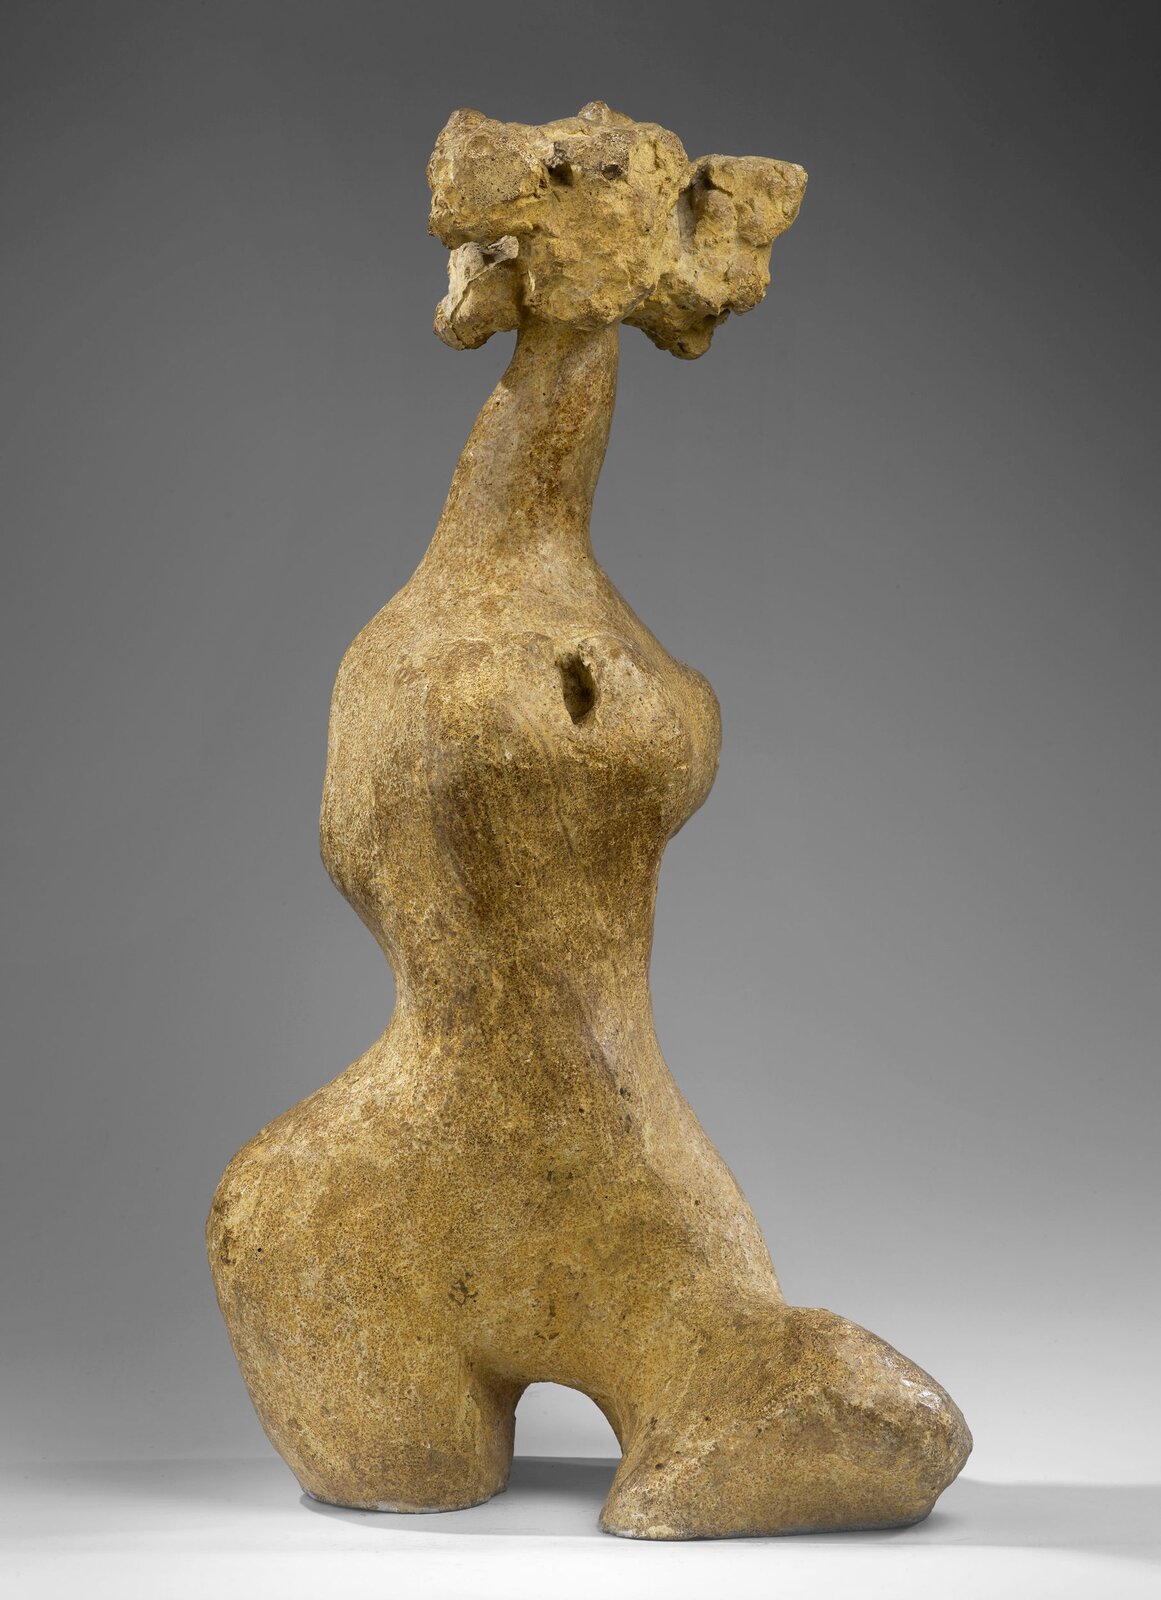 Zdjęcie przedstawia rzeźbę Aliny Szapocznikowej Bellissima., Żółta rzeźba w zarysie przypomina kształt kobiecy, Rzeźba nie ma rąk, posiada krótkie fragmenty ud zamiast nóg.